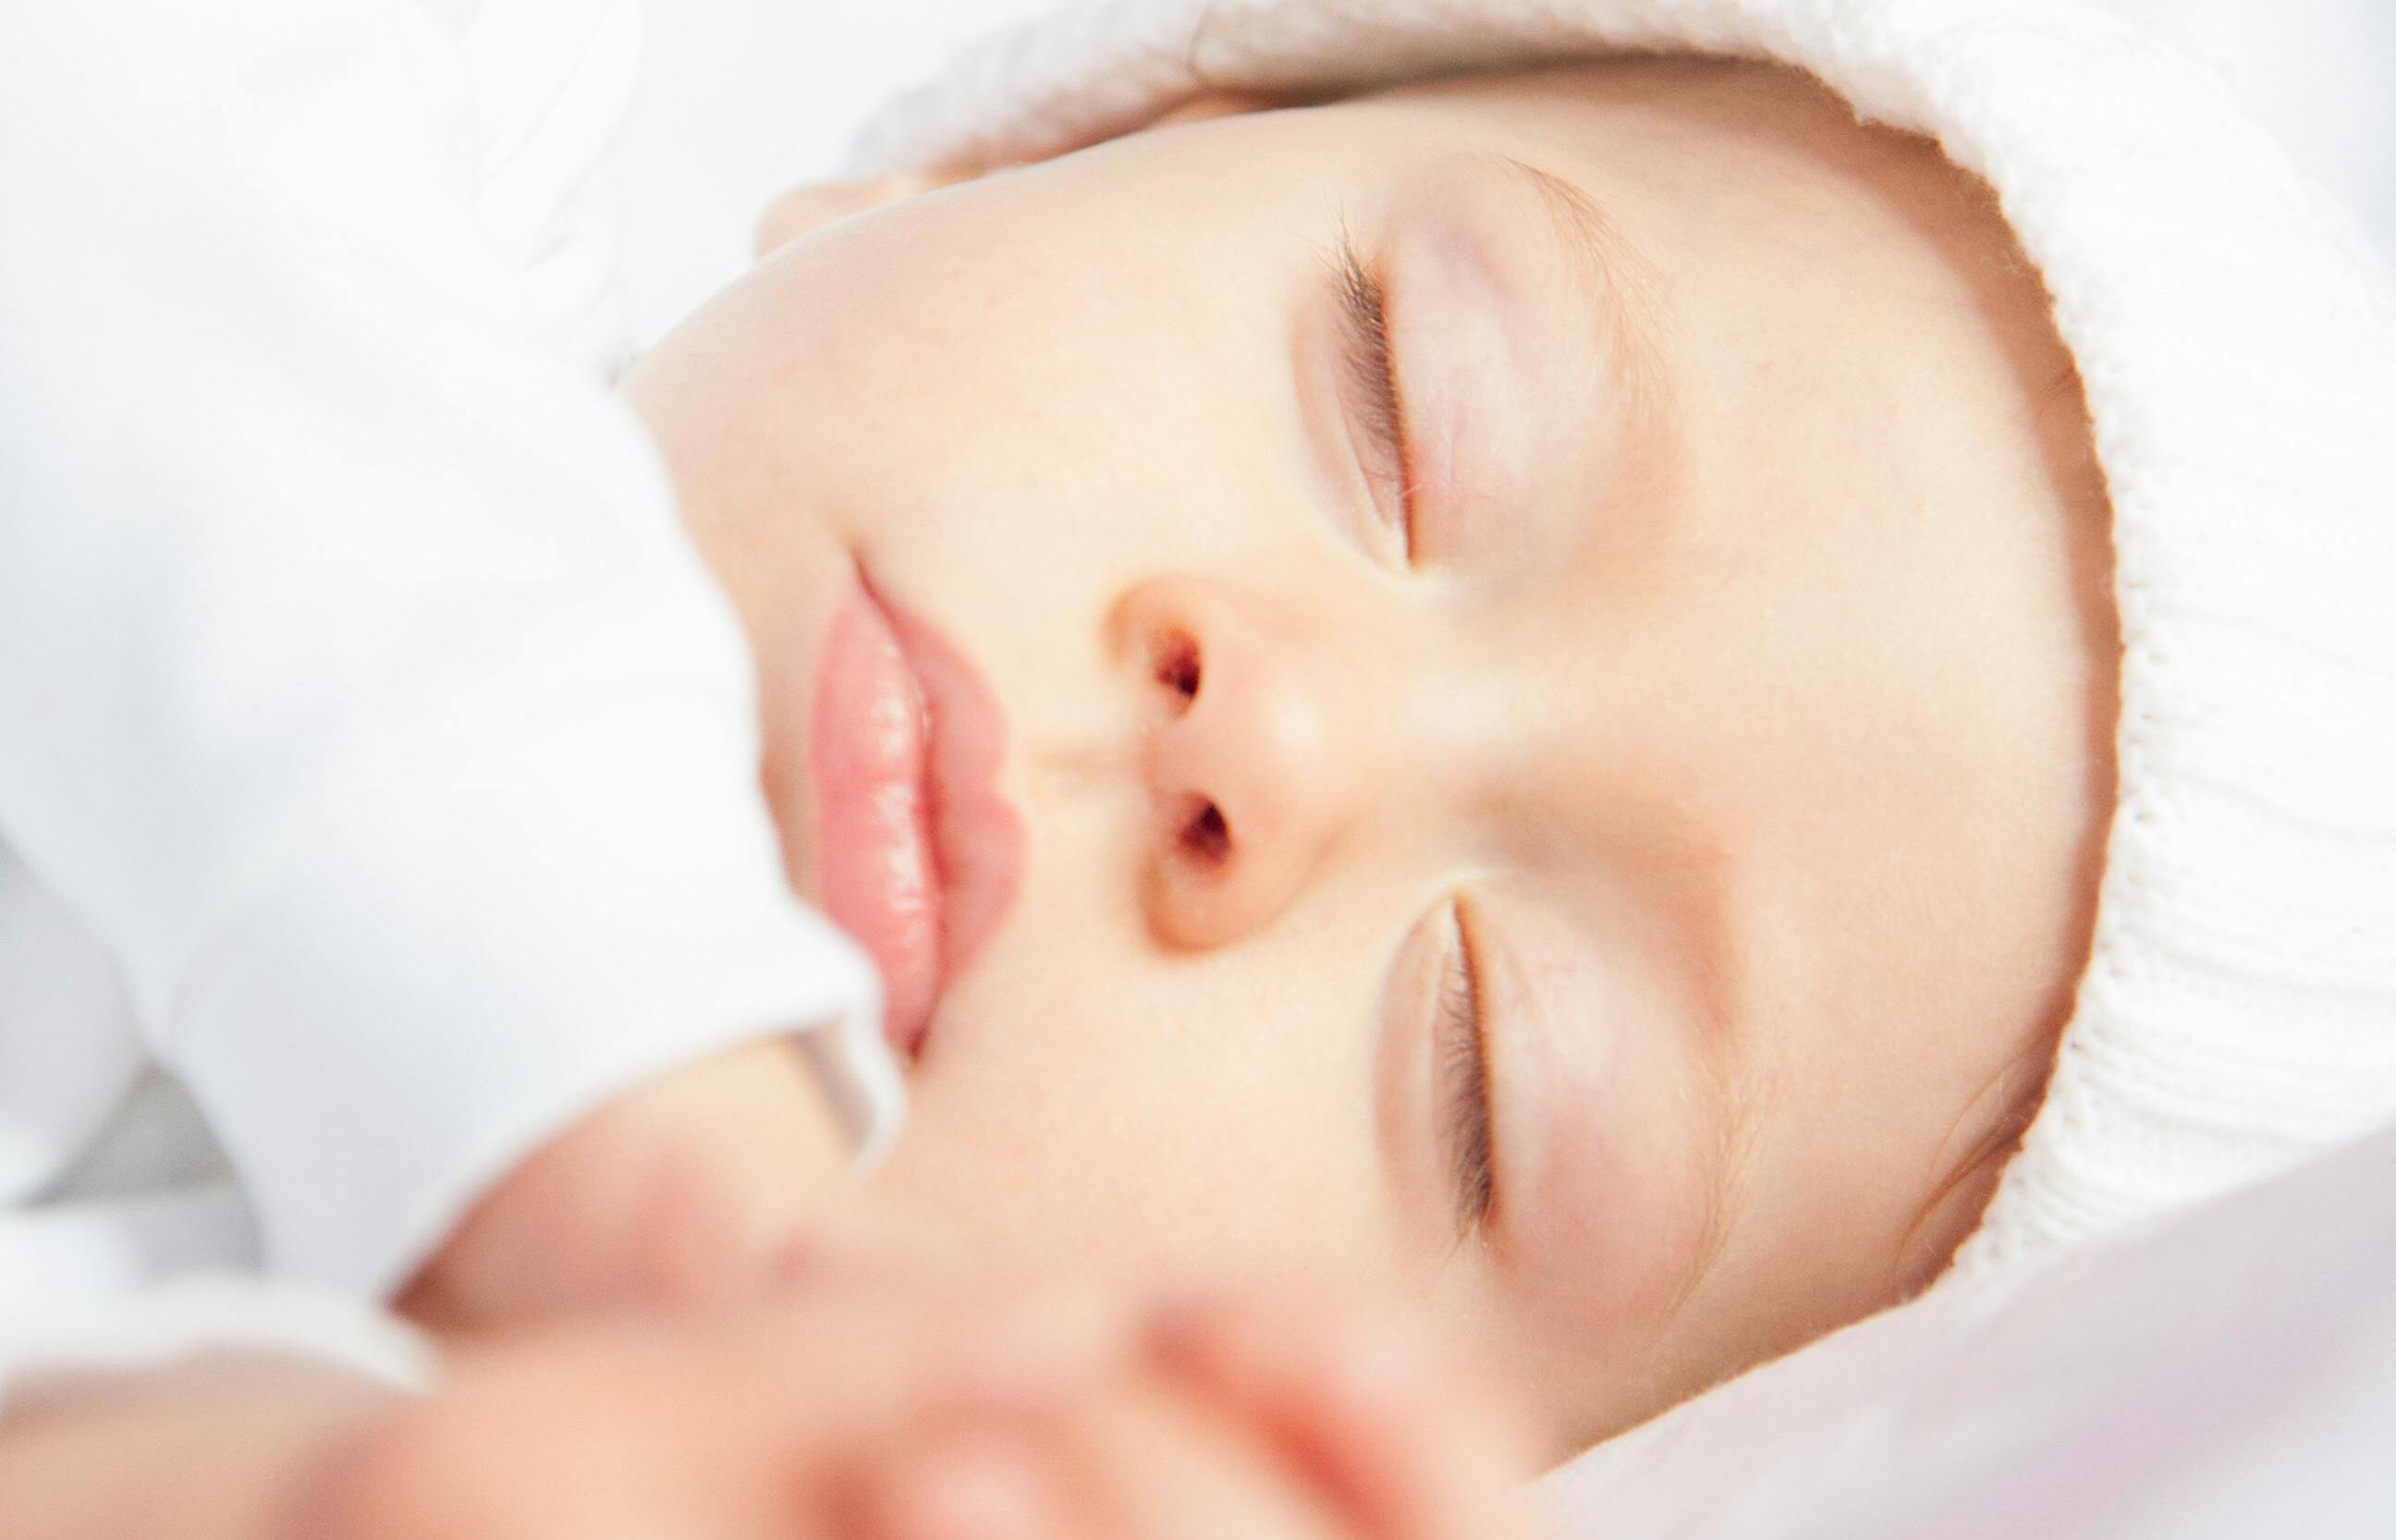 Prevent crib death and follow safe sleep advice